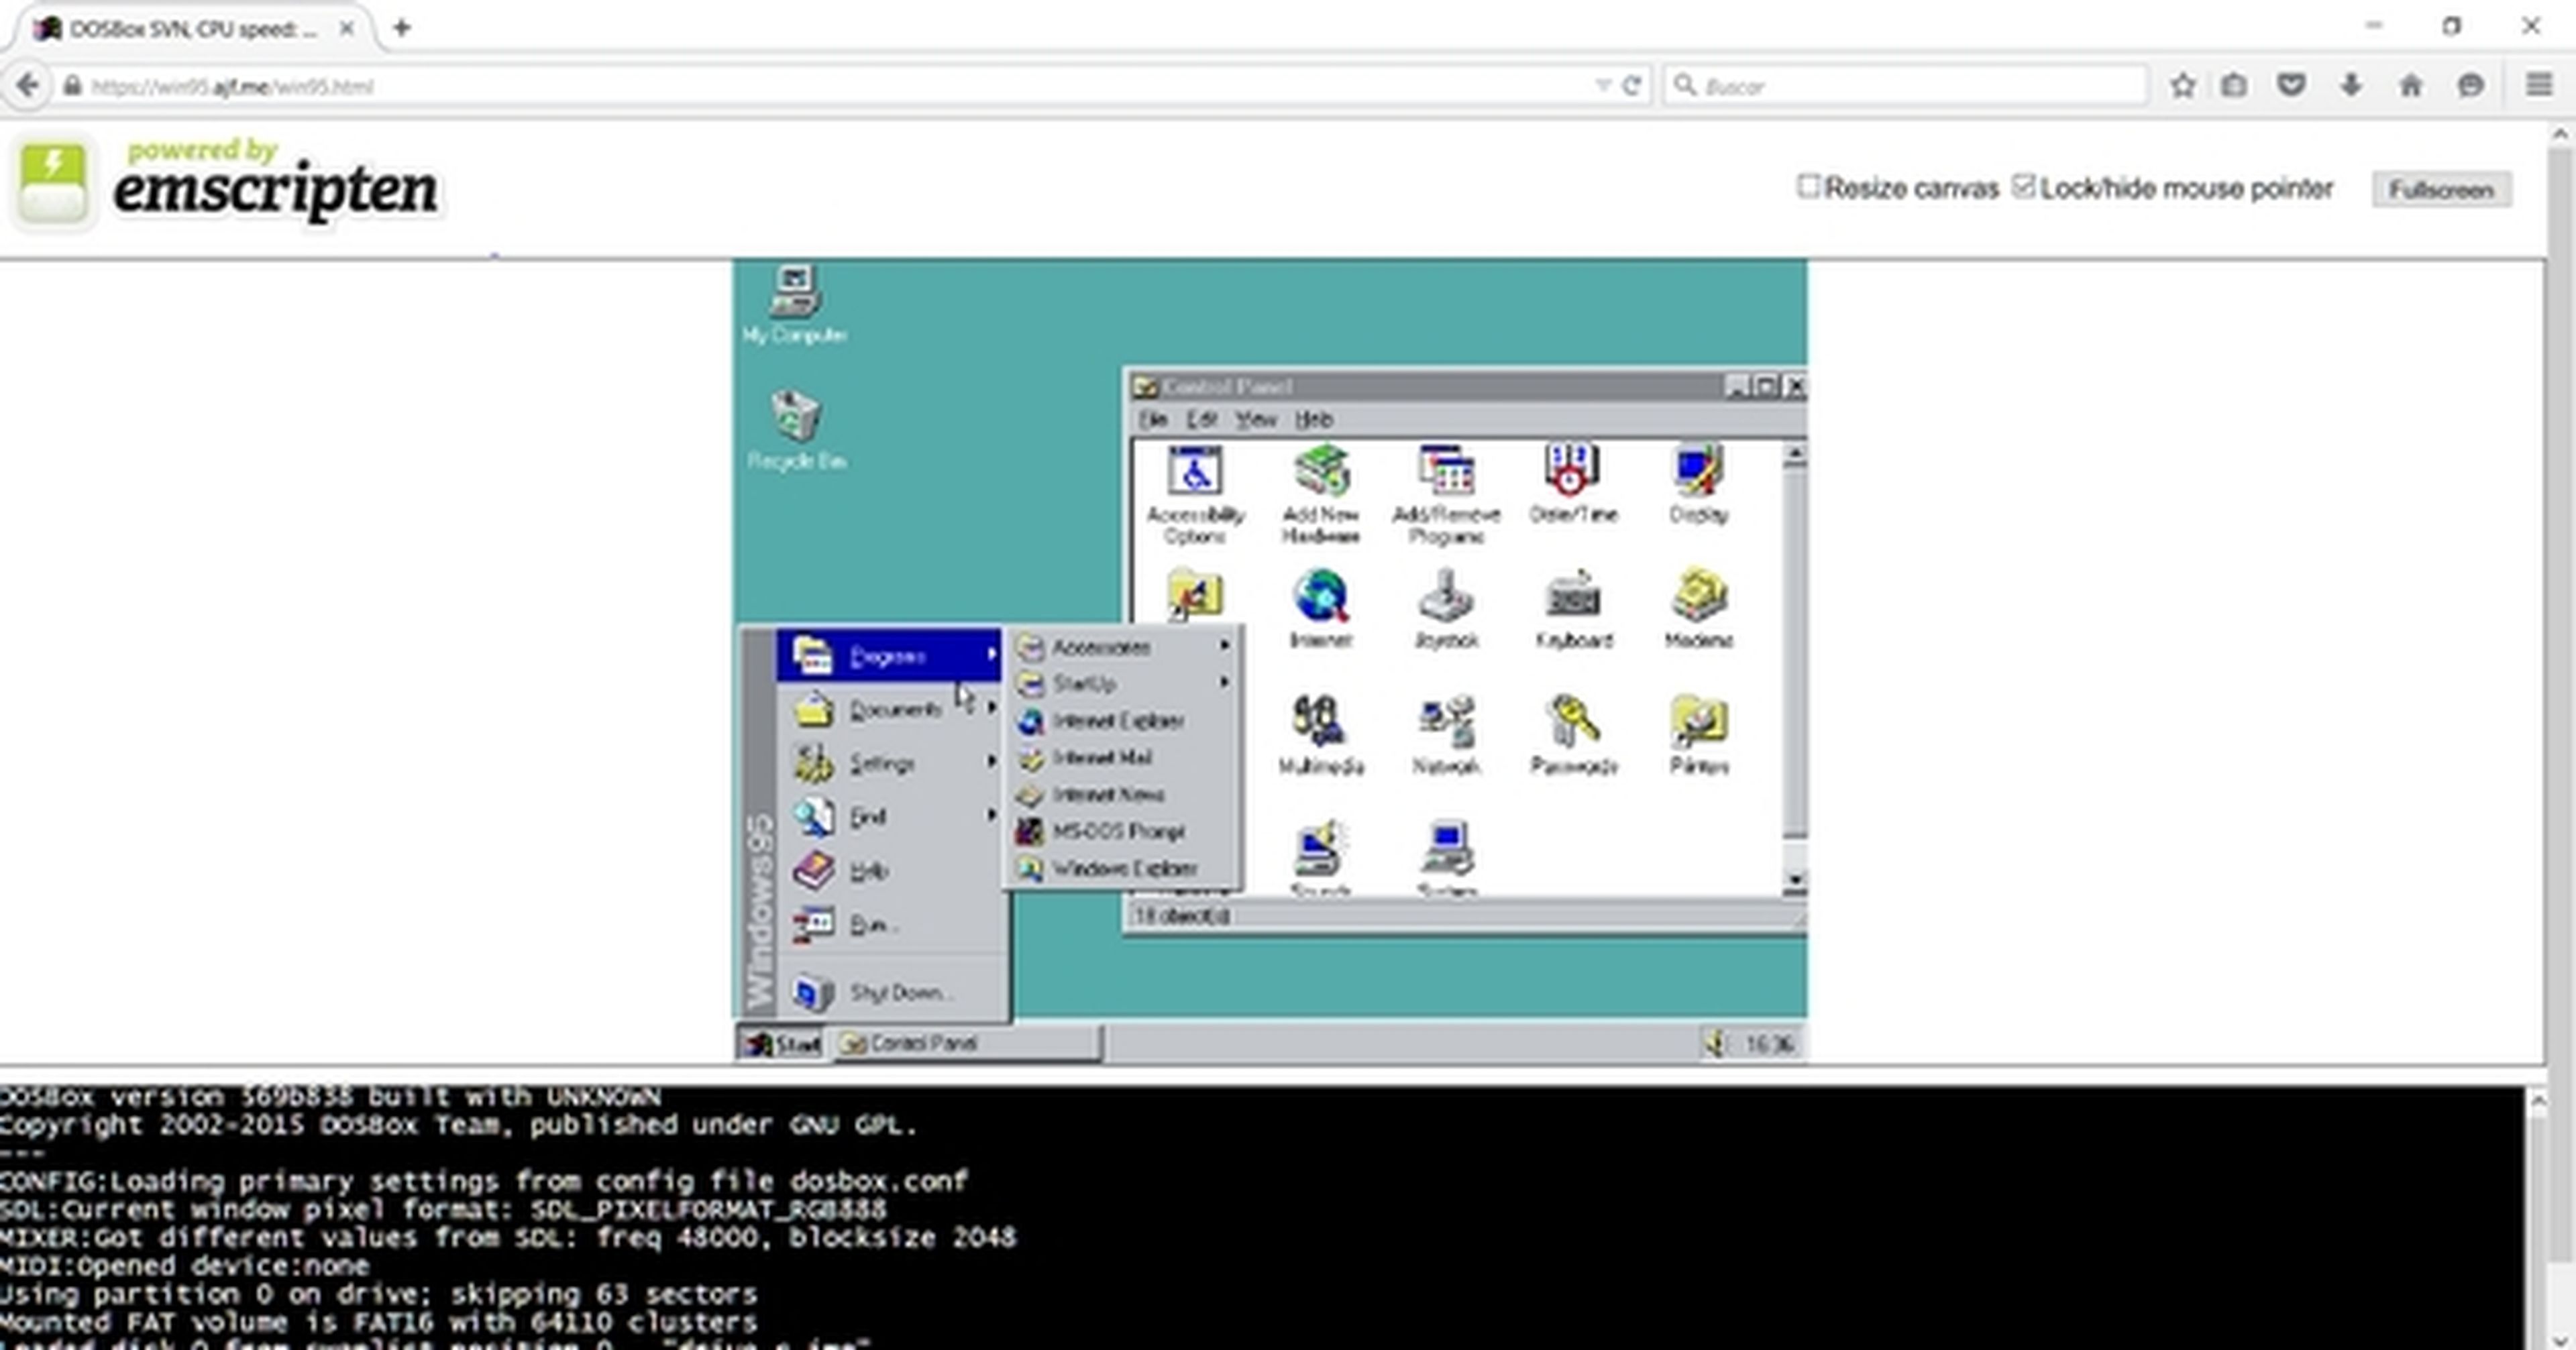 Descubre cómo ejecutar Windows 95 en el navegador sin instalación